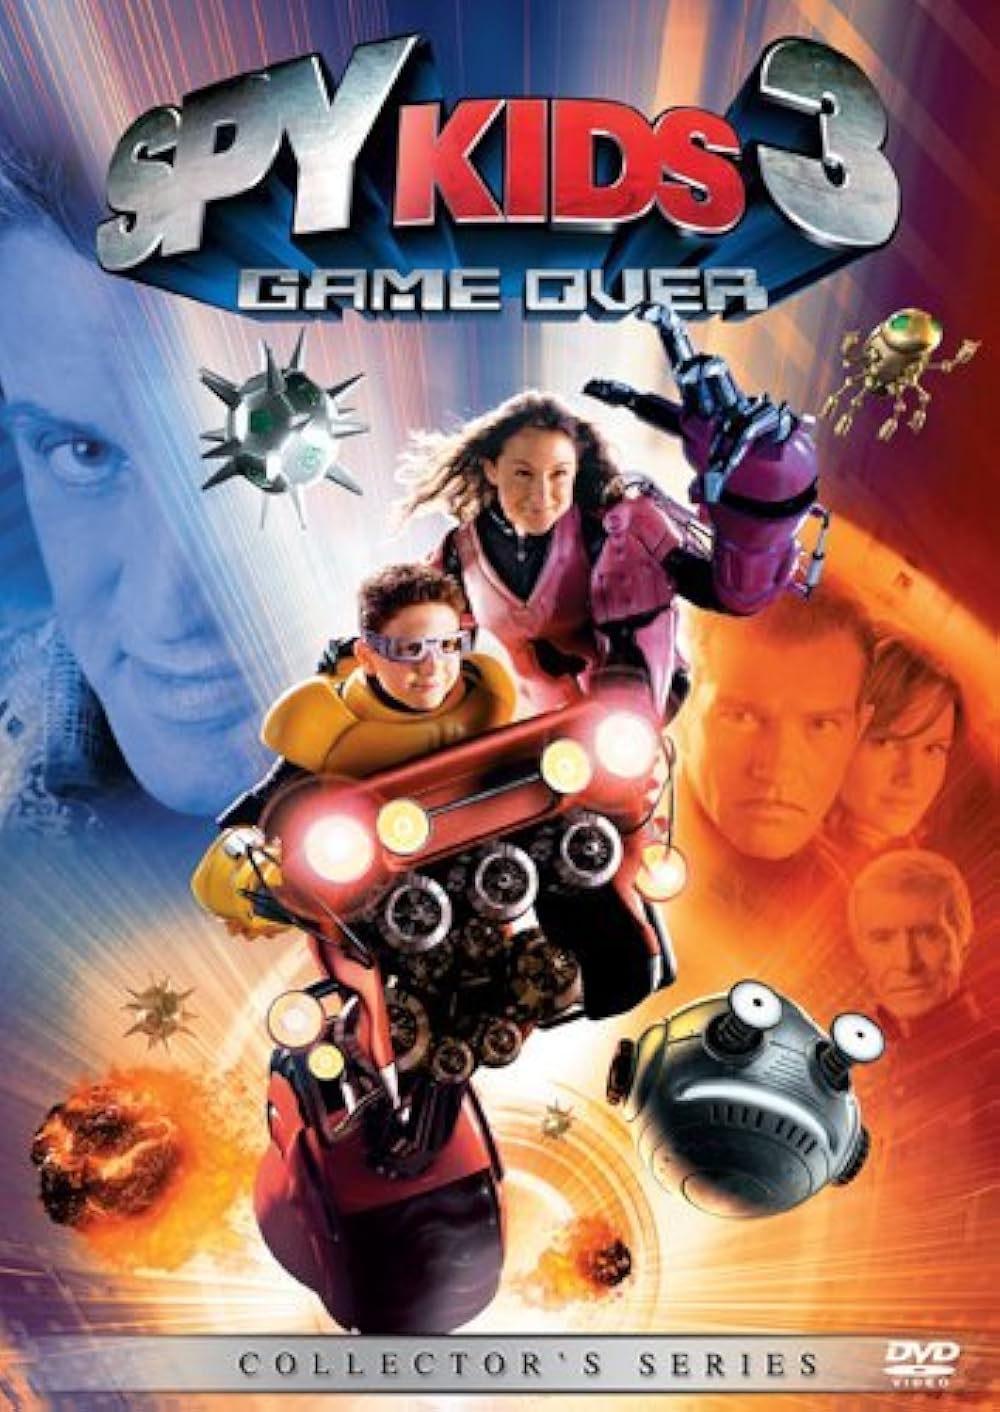 Spy Kids 3-D: Game Over (2003) 448Kbps 23.976Fps 48Khz 5.1Ch DVD Turkish